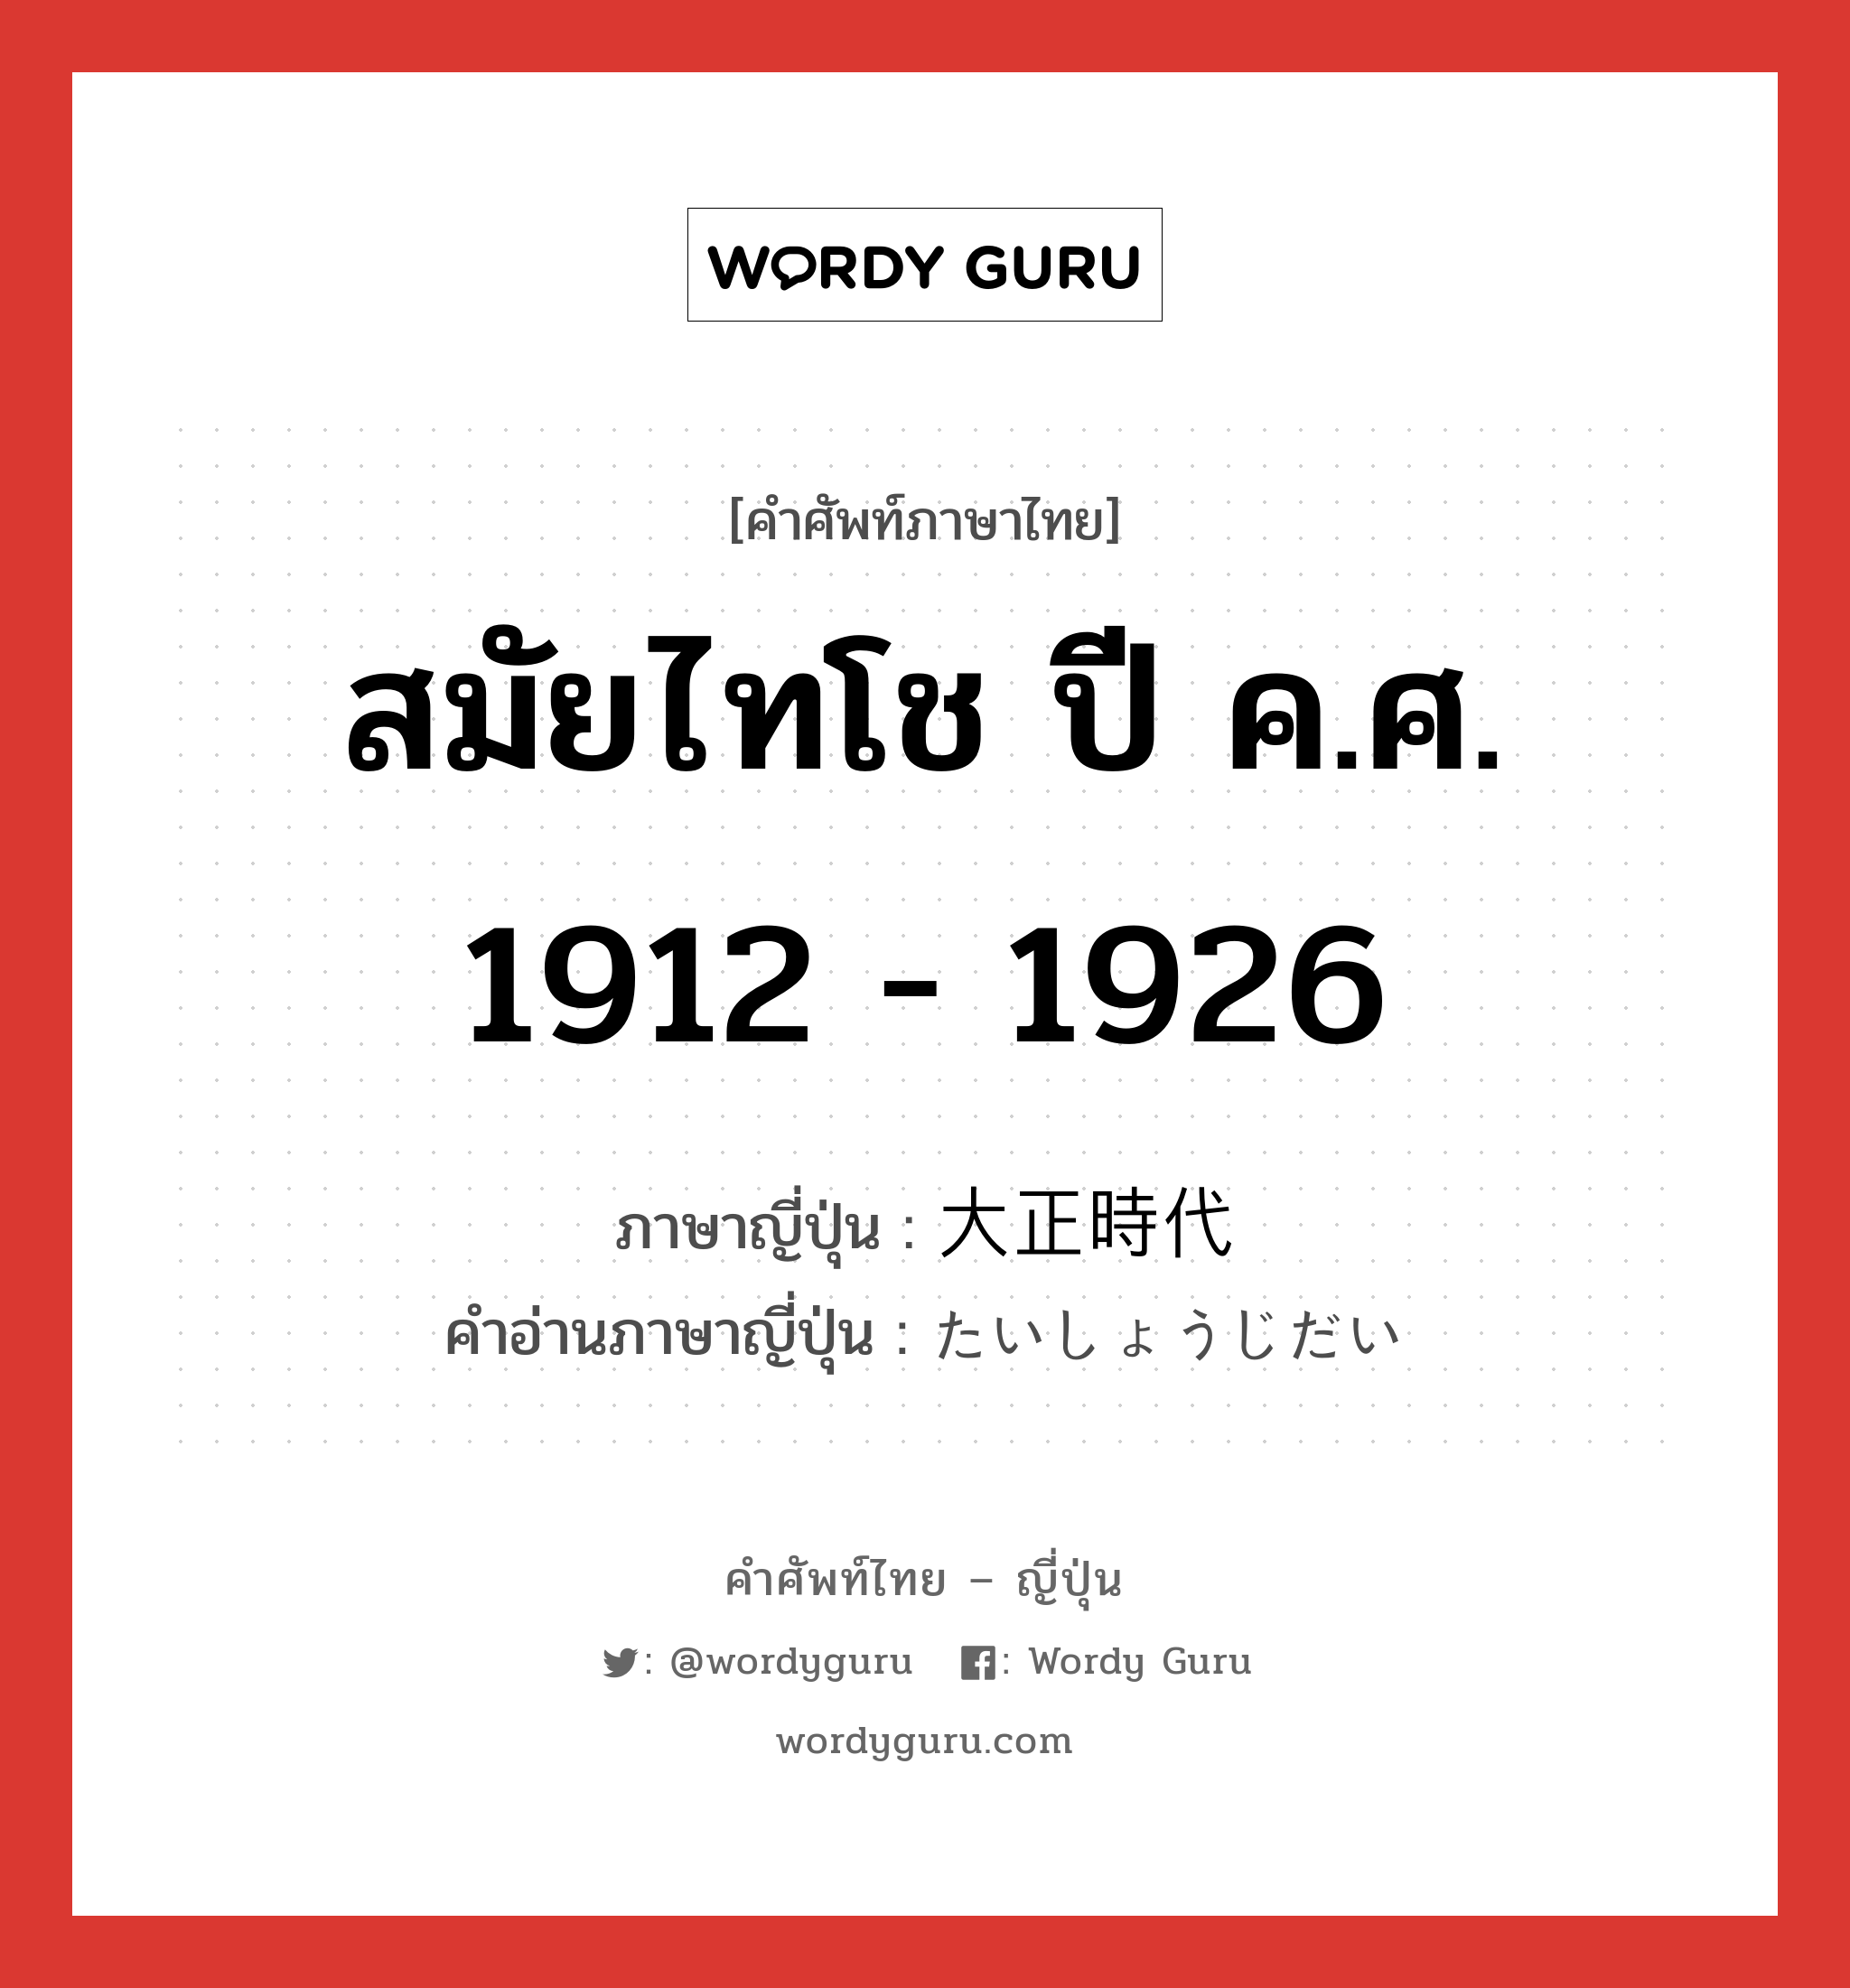 สมัยไทโช ปี ค.ศ. 1912 - 1926 ภาษาญี่ปุ่นคืออะไร, คำศัพท์ภาษาไทย - ญี่ปุ่น สมัยไทโช ปี ค.ศ. 1912 - 1926 ภาษาญี่ปุ่น 大正時代 คำอ่านภาษาญี่ปุ่น たいしょうじだい หมวด n หมวด n